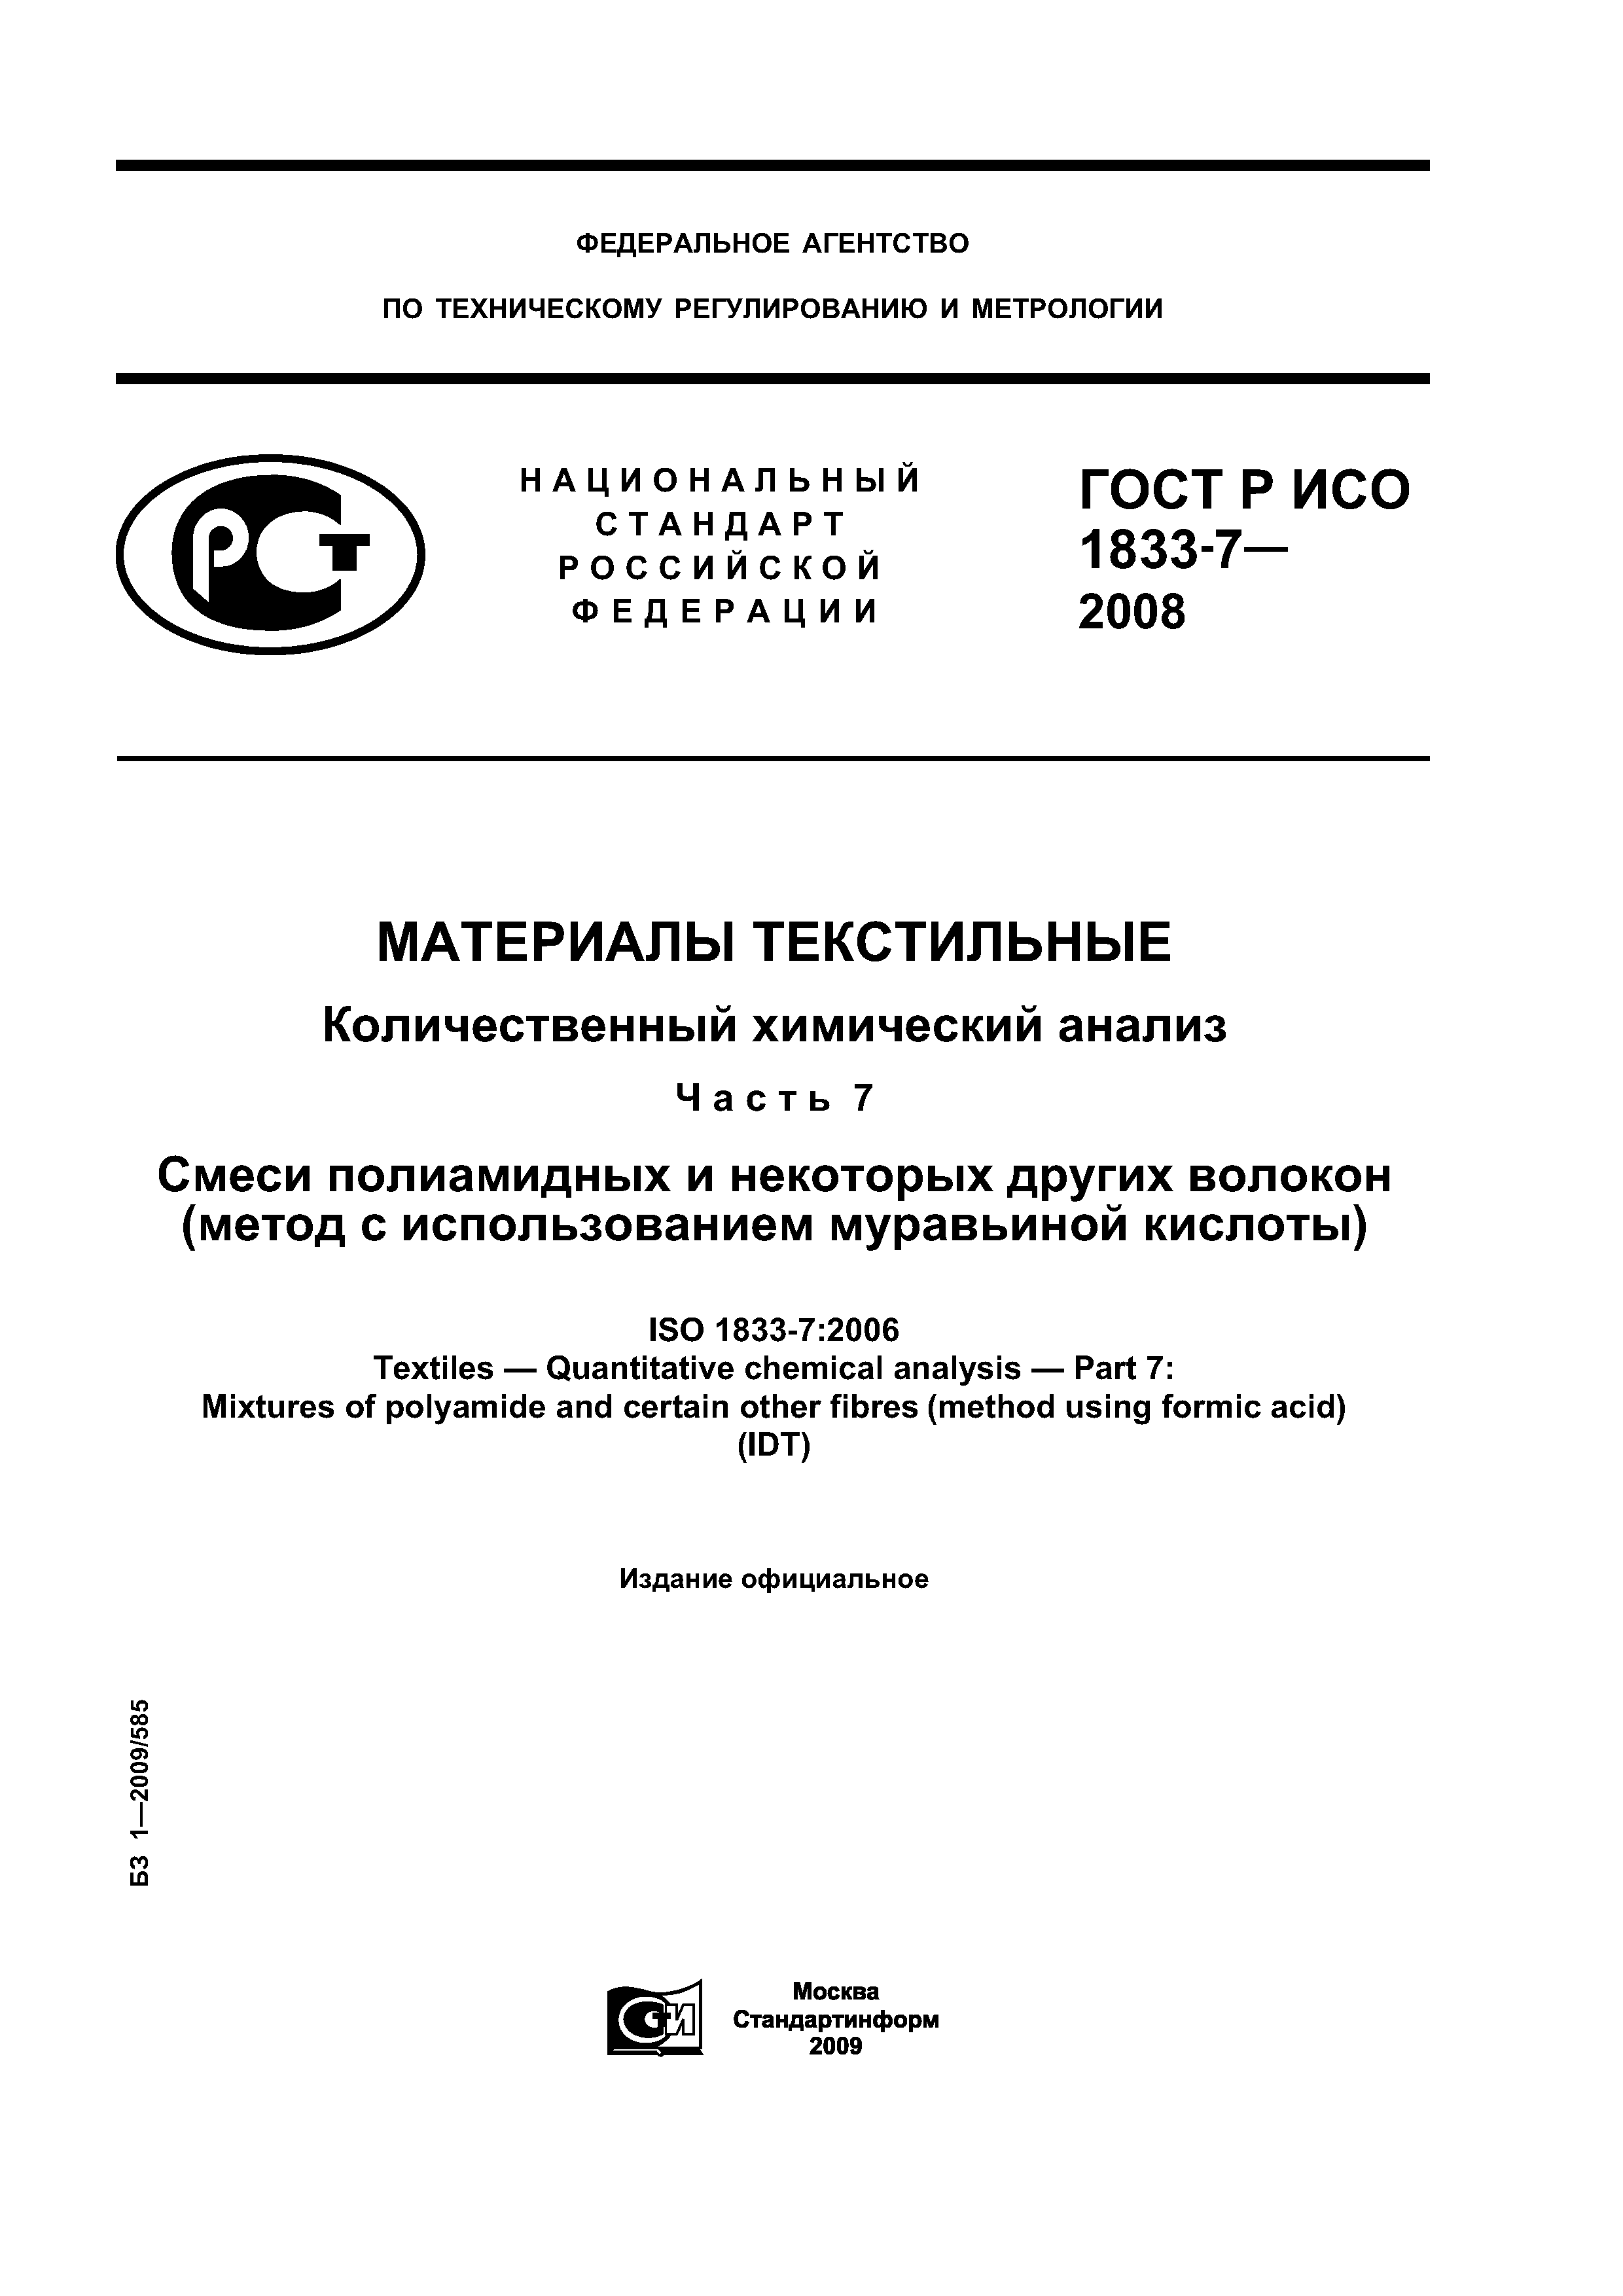 ГОСТ Р ИСО 1833-7-2008